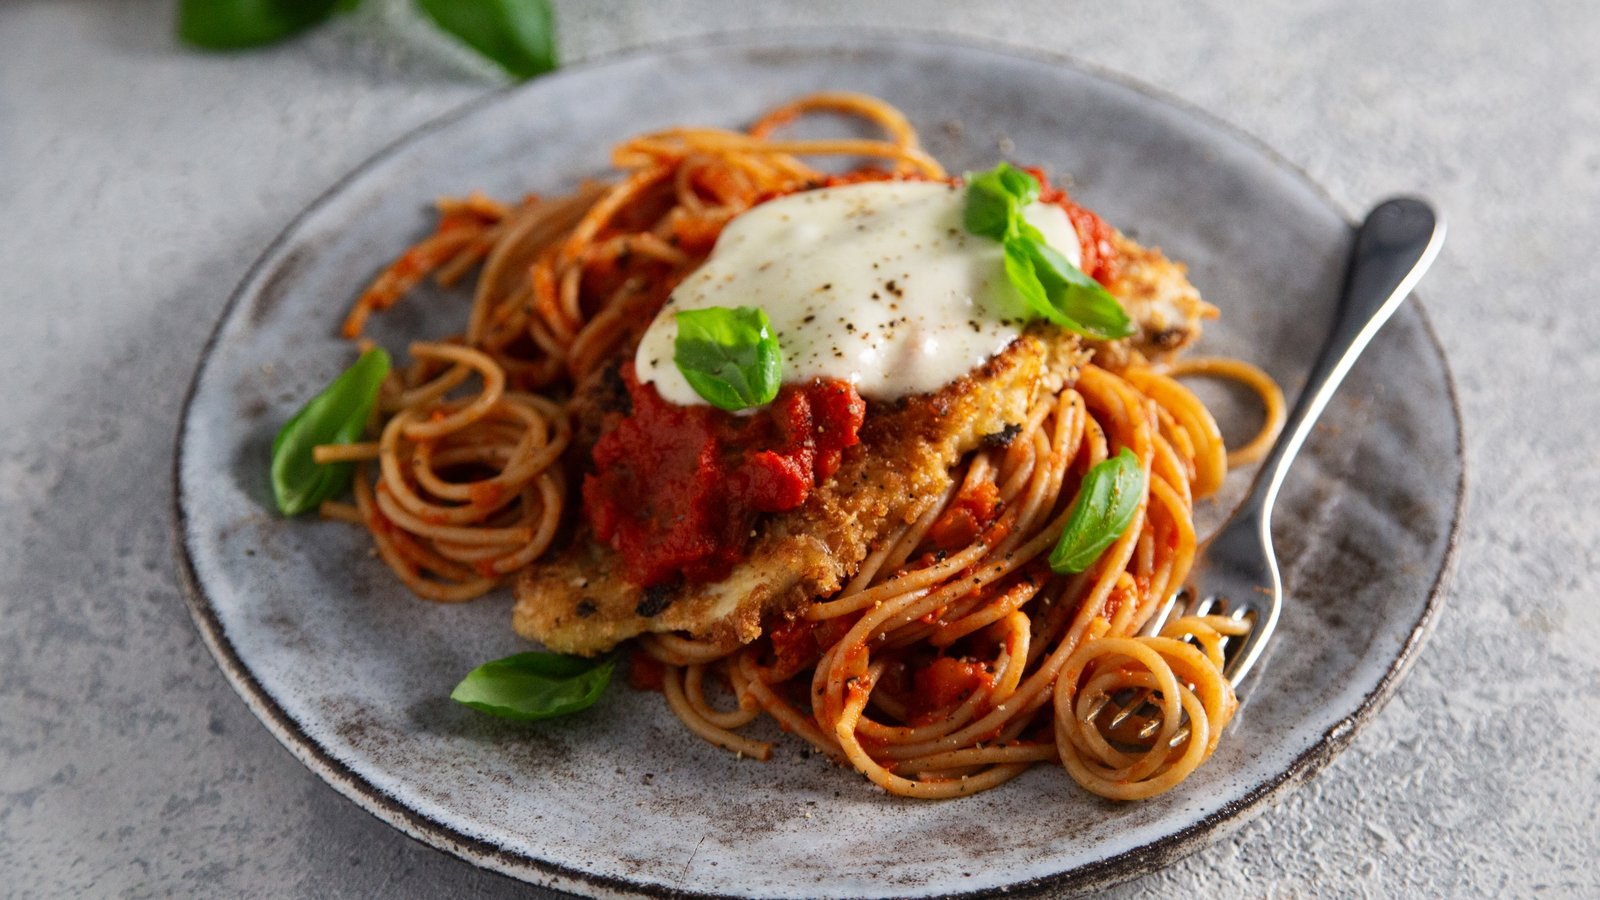 Chicken Parmigiano with spaghetti: OT